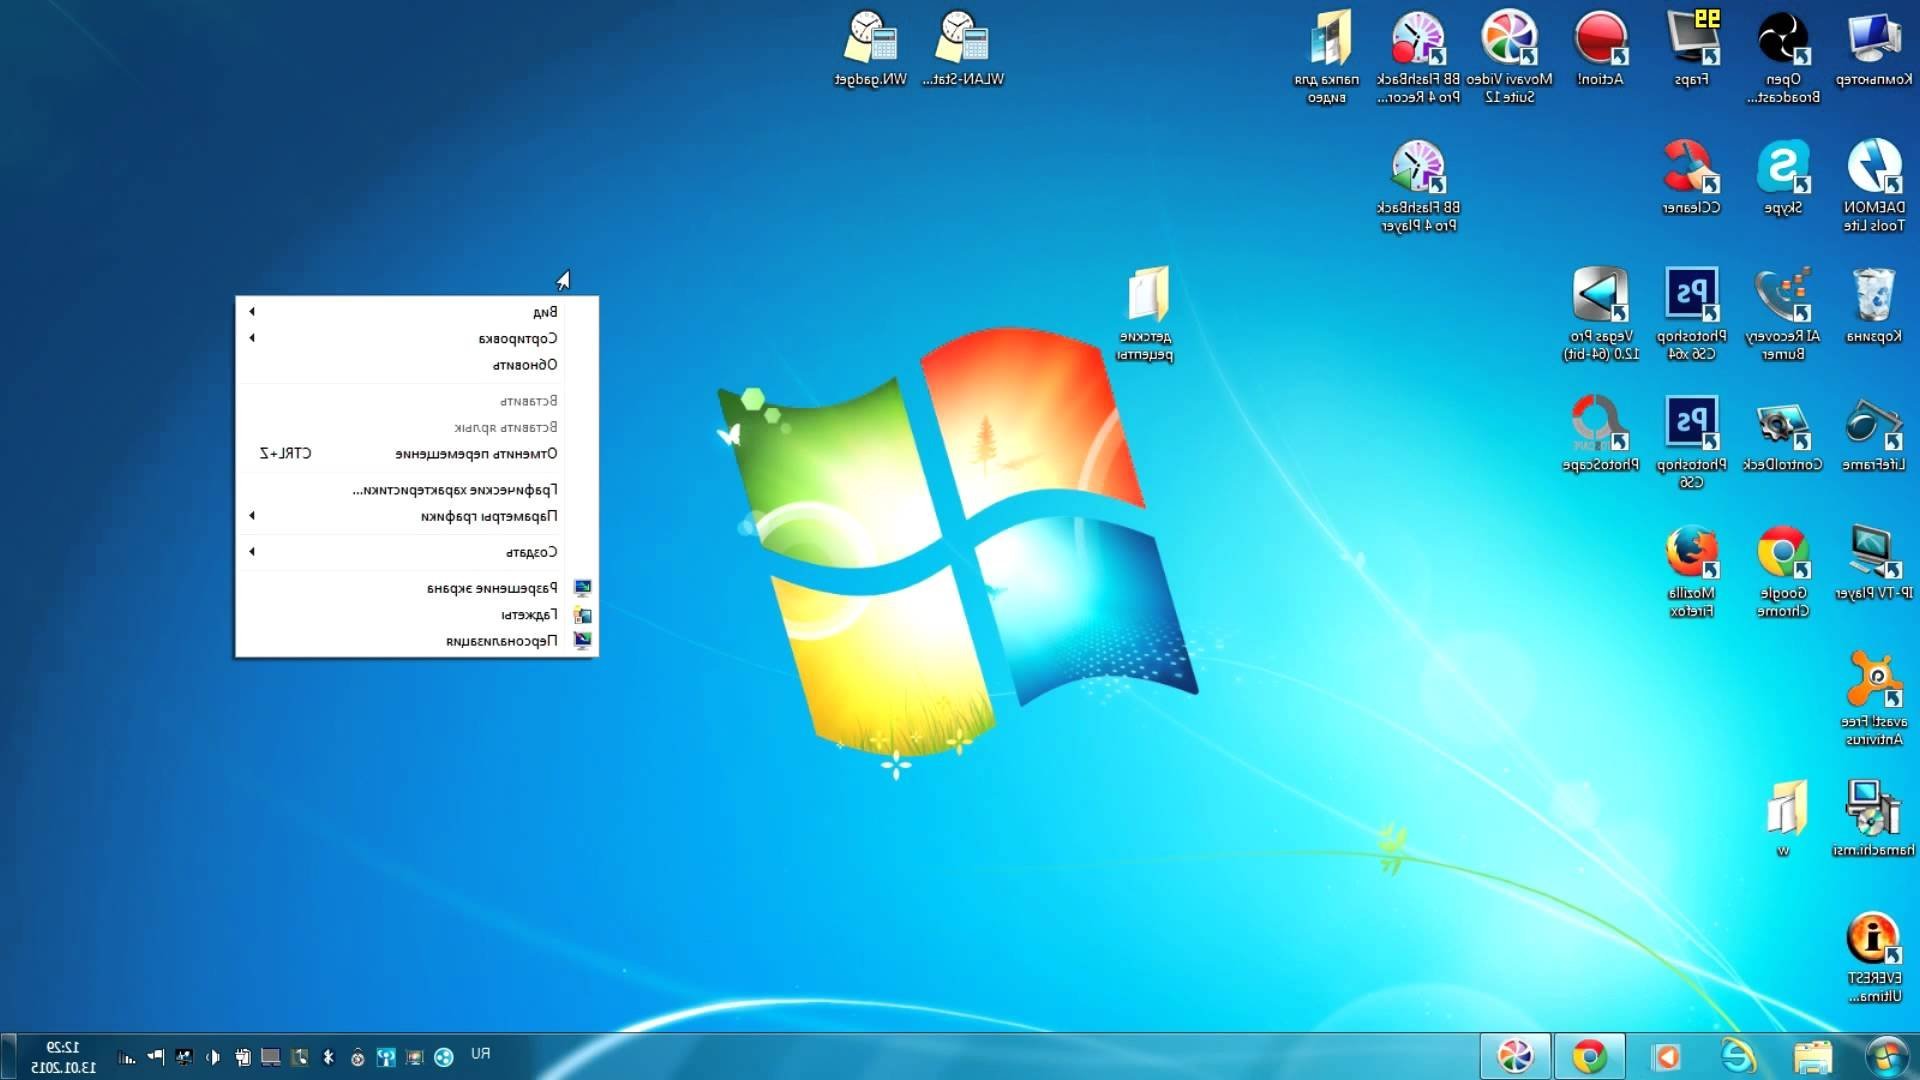 Появись на рабочем столе. Ярлыки на рабочем столе. Рабочий стол Windows с ярлыками. Windows 7 рабочий стол с ярлыками. Папка на рабочем столе компьютера.